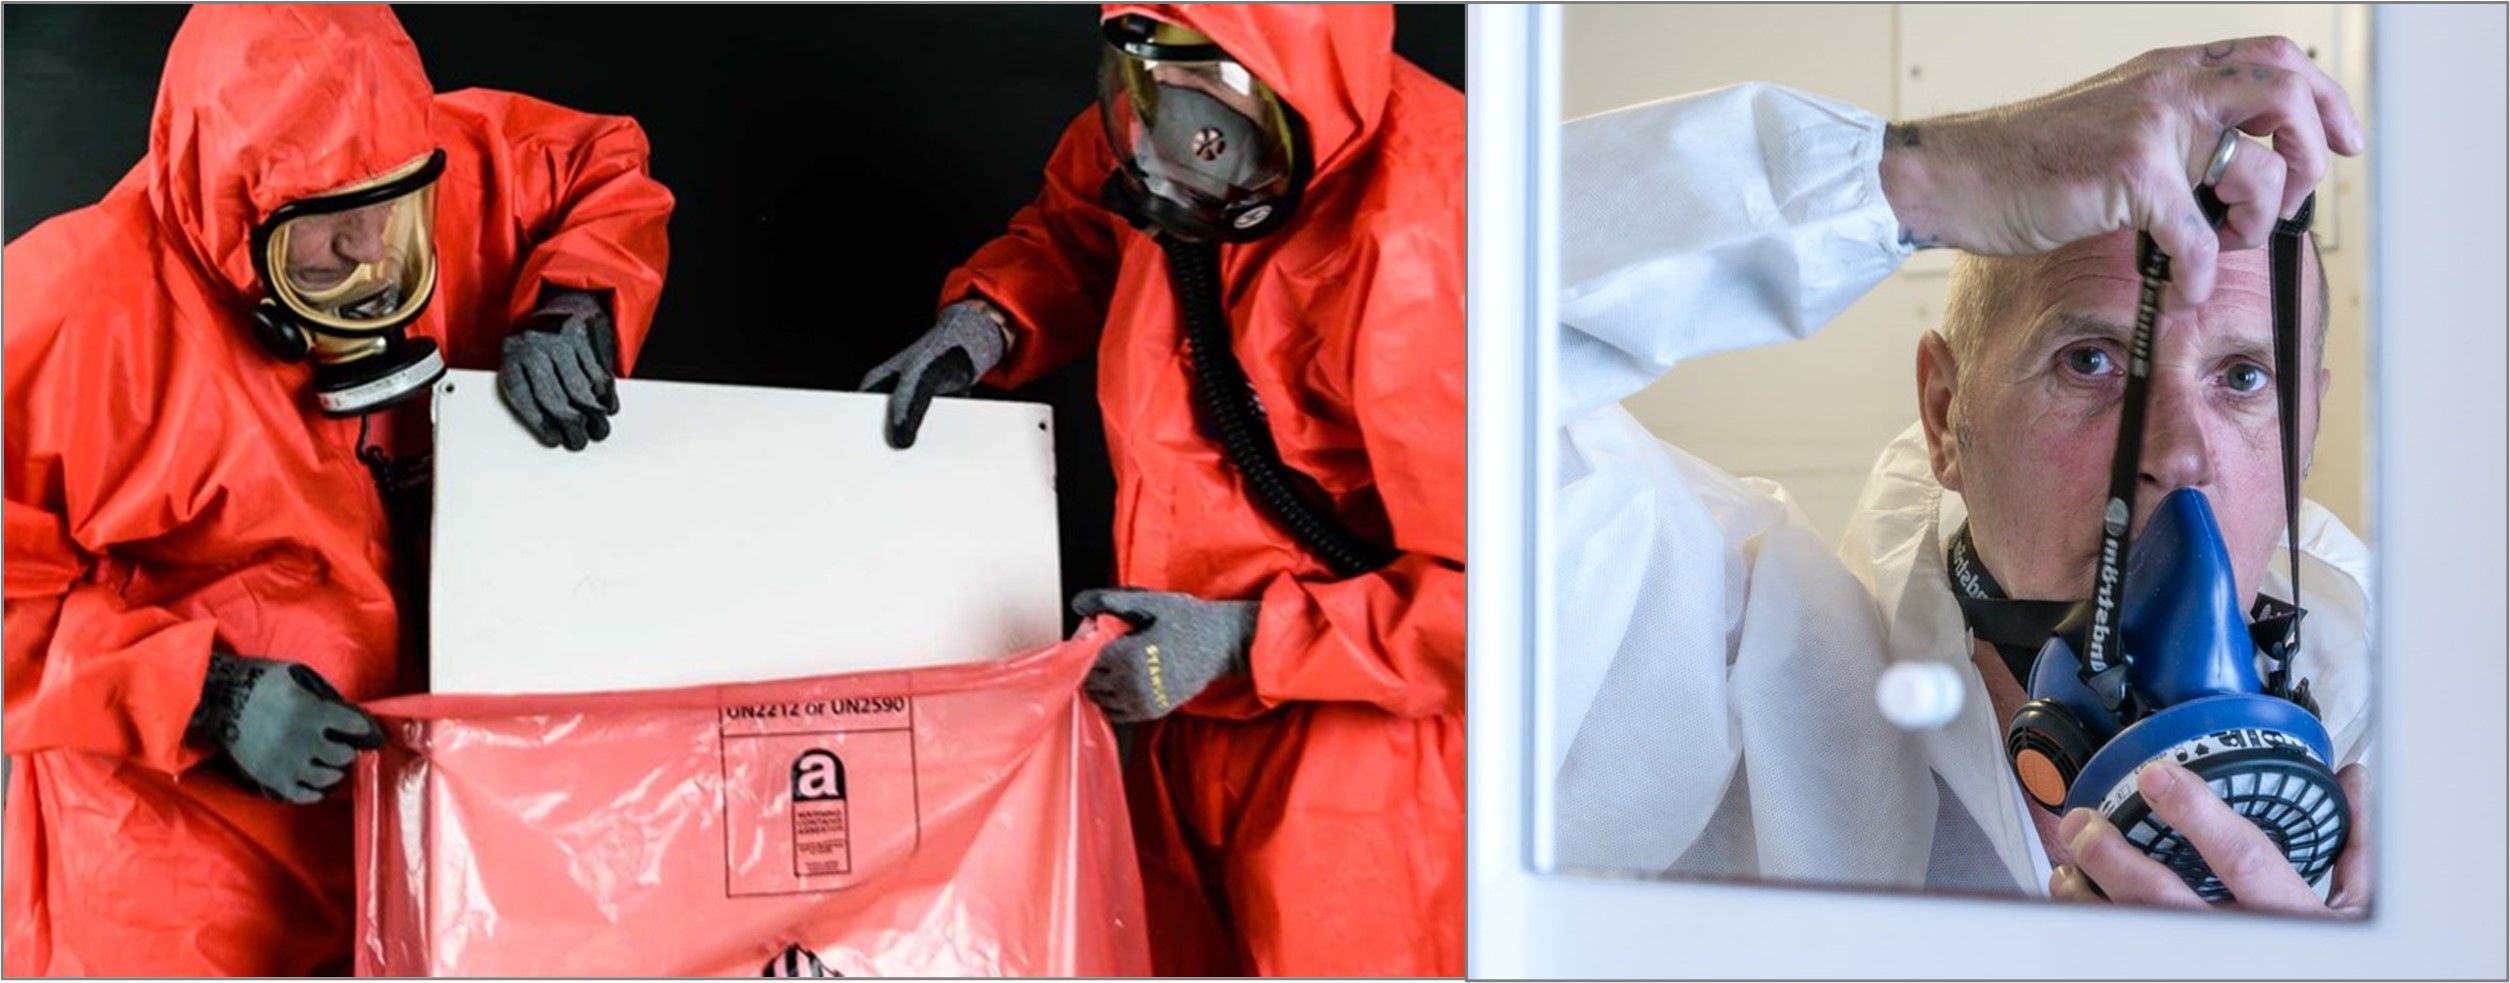 Asbestos Removal Contractors Association